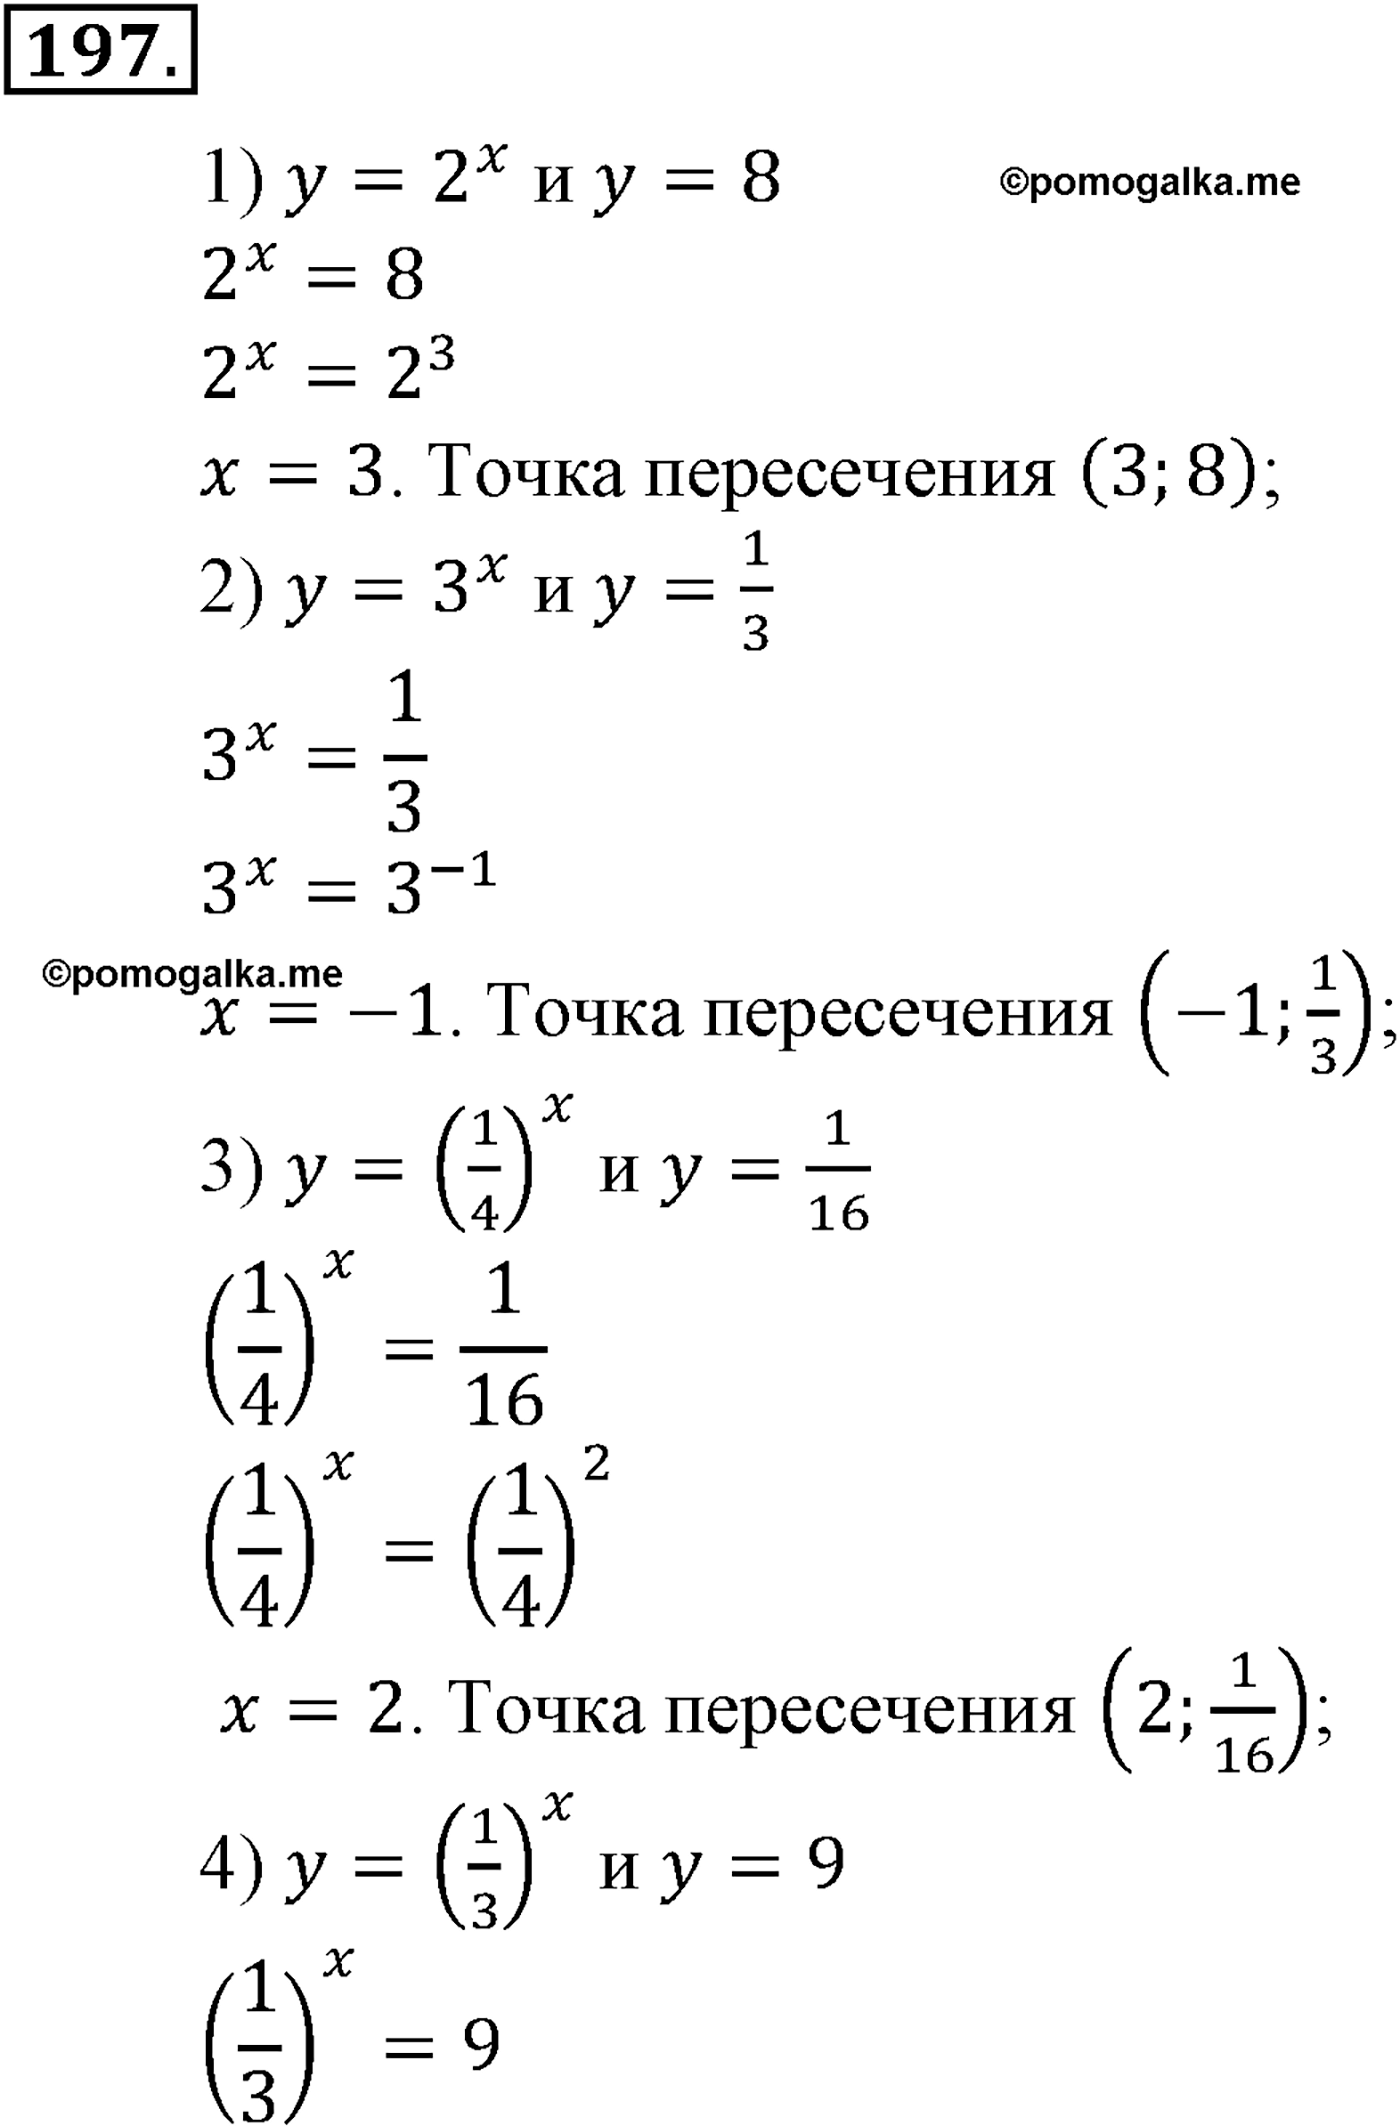 разбор задачи №197 по алгебре за 10-11 класс из учебника Алимова, Колягина